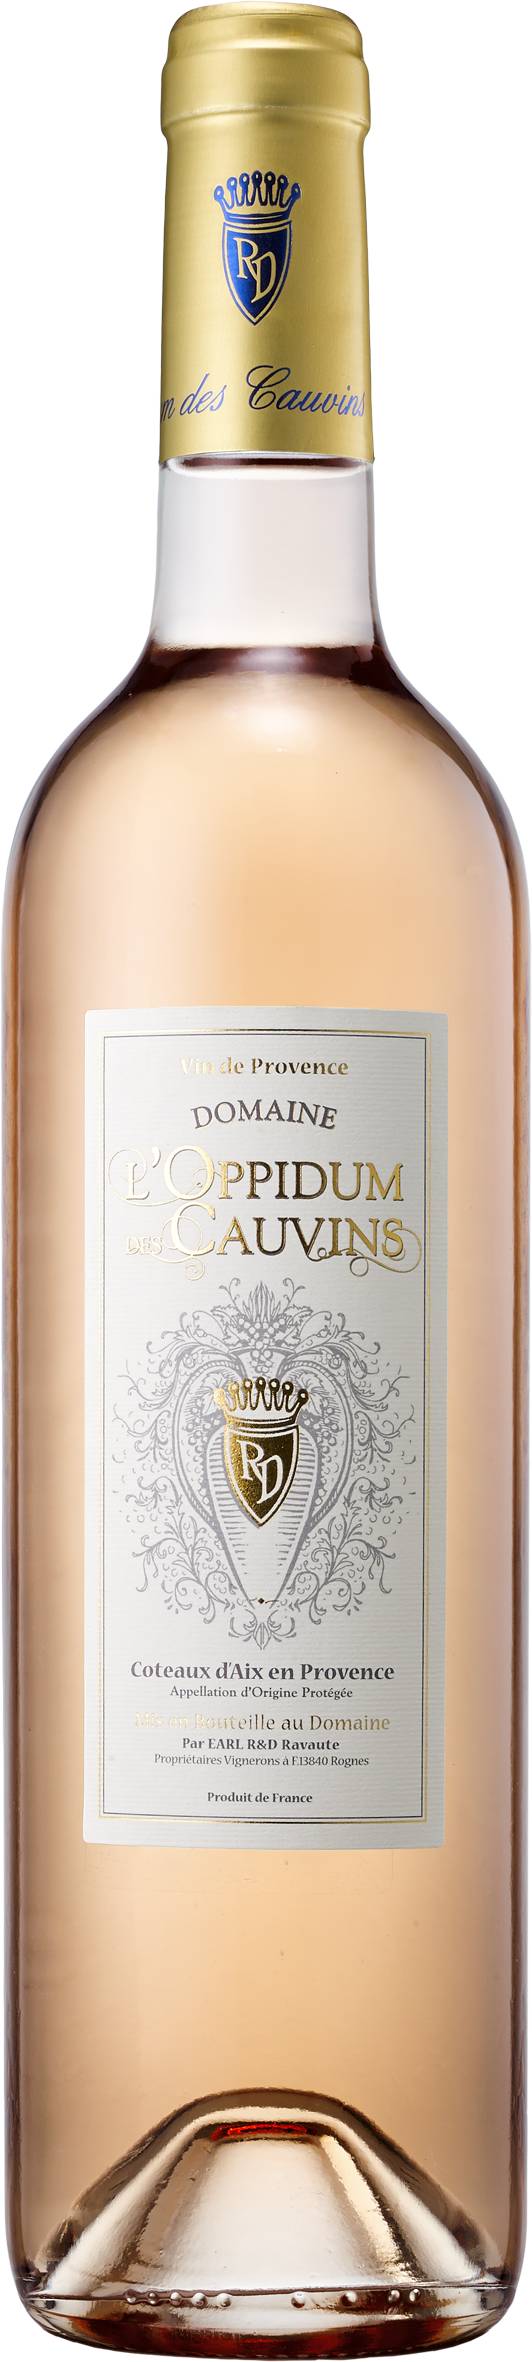 Domaine L'oppidum des Cauvins - Coteaux d'aix en Provence vin rosé AOP (750 ml)